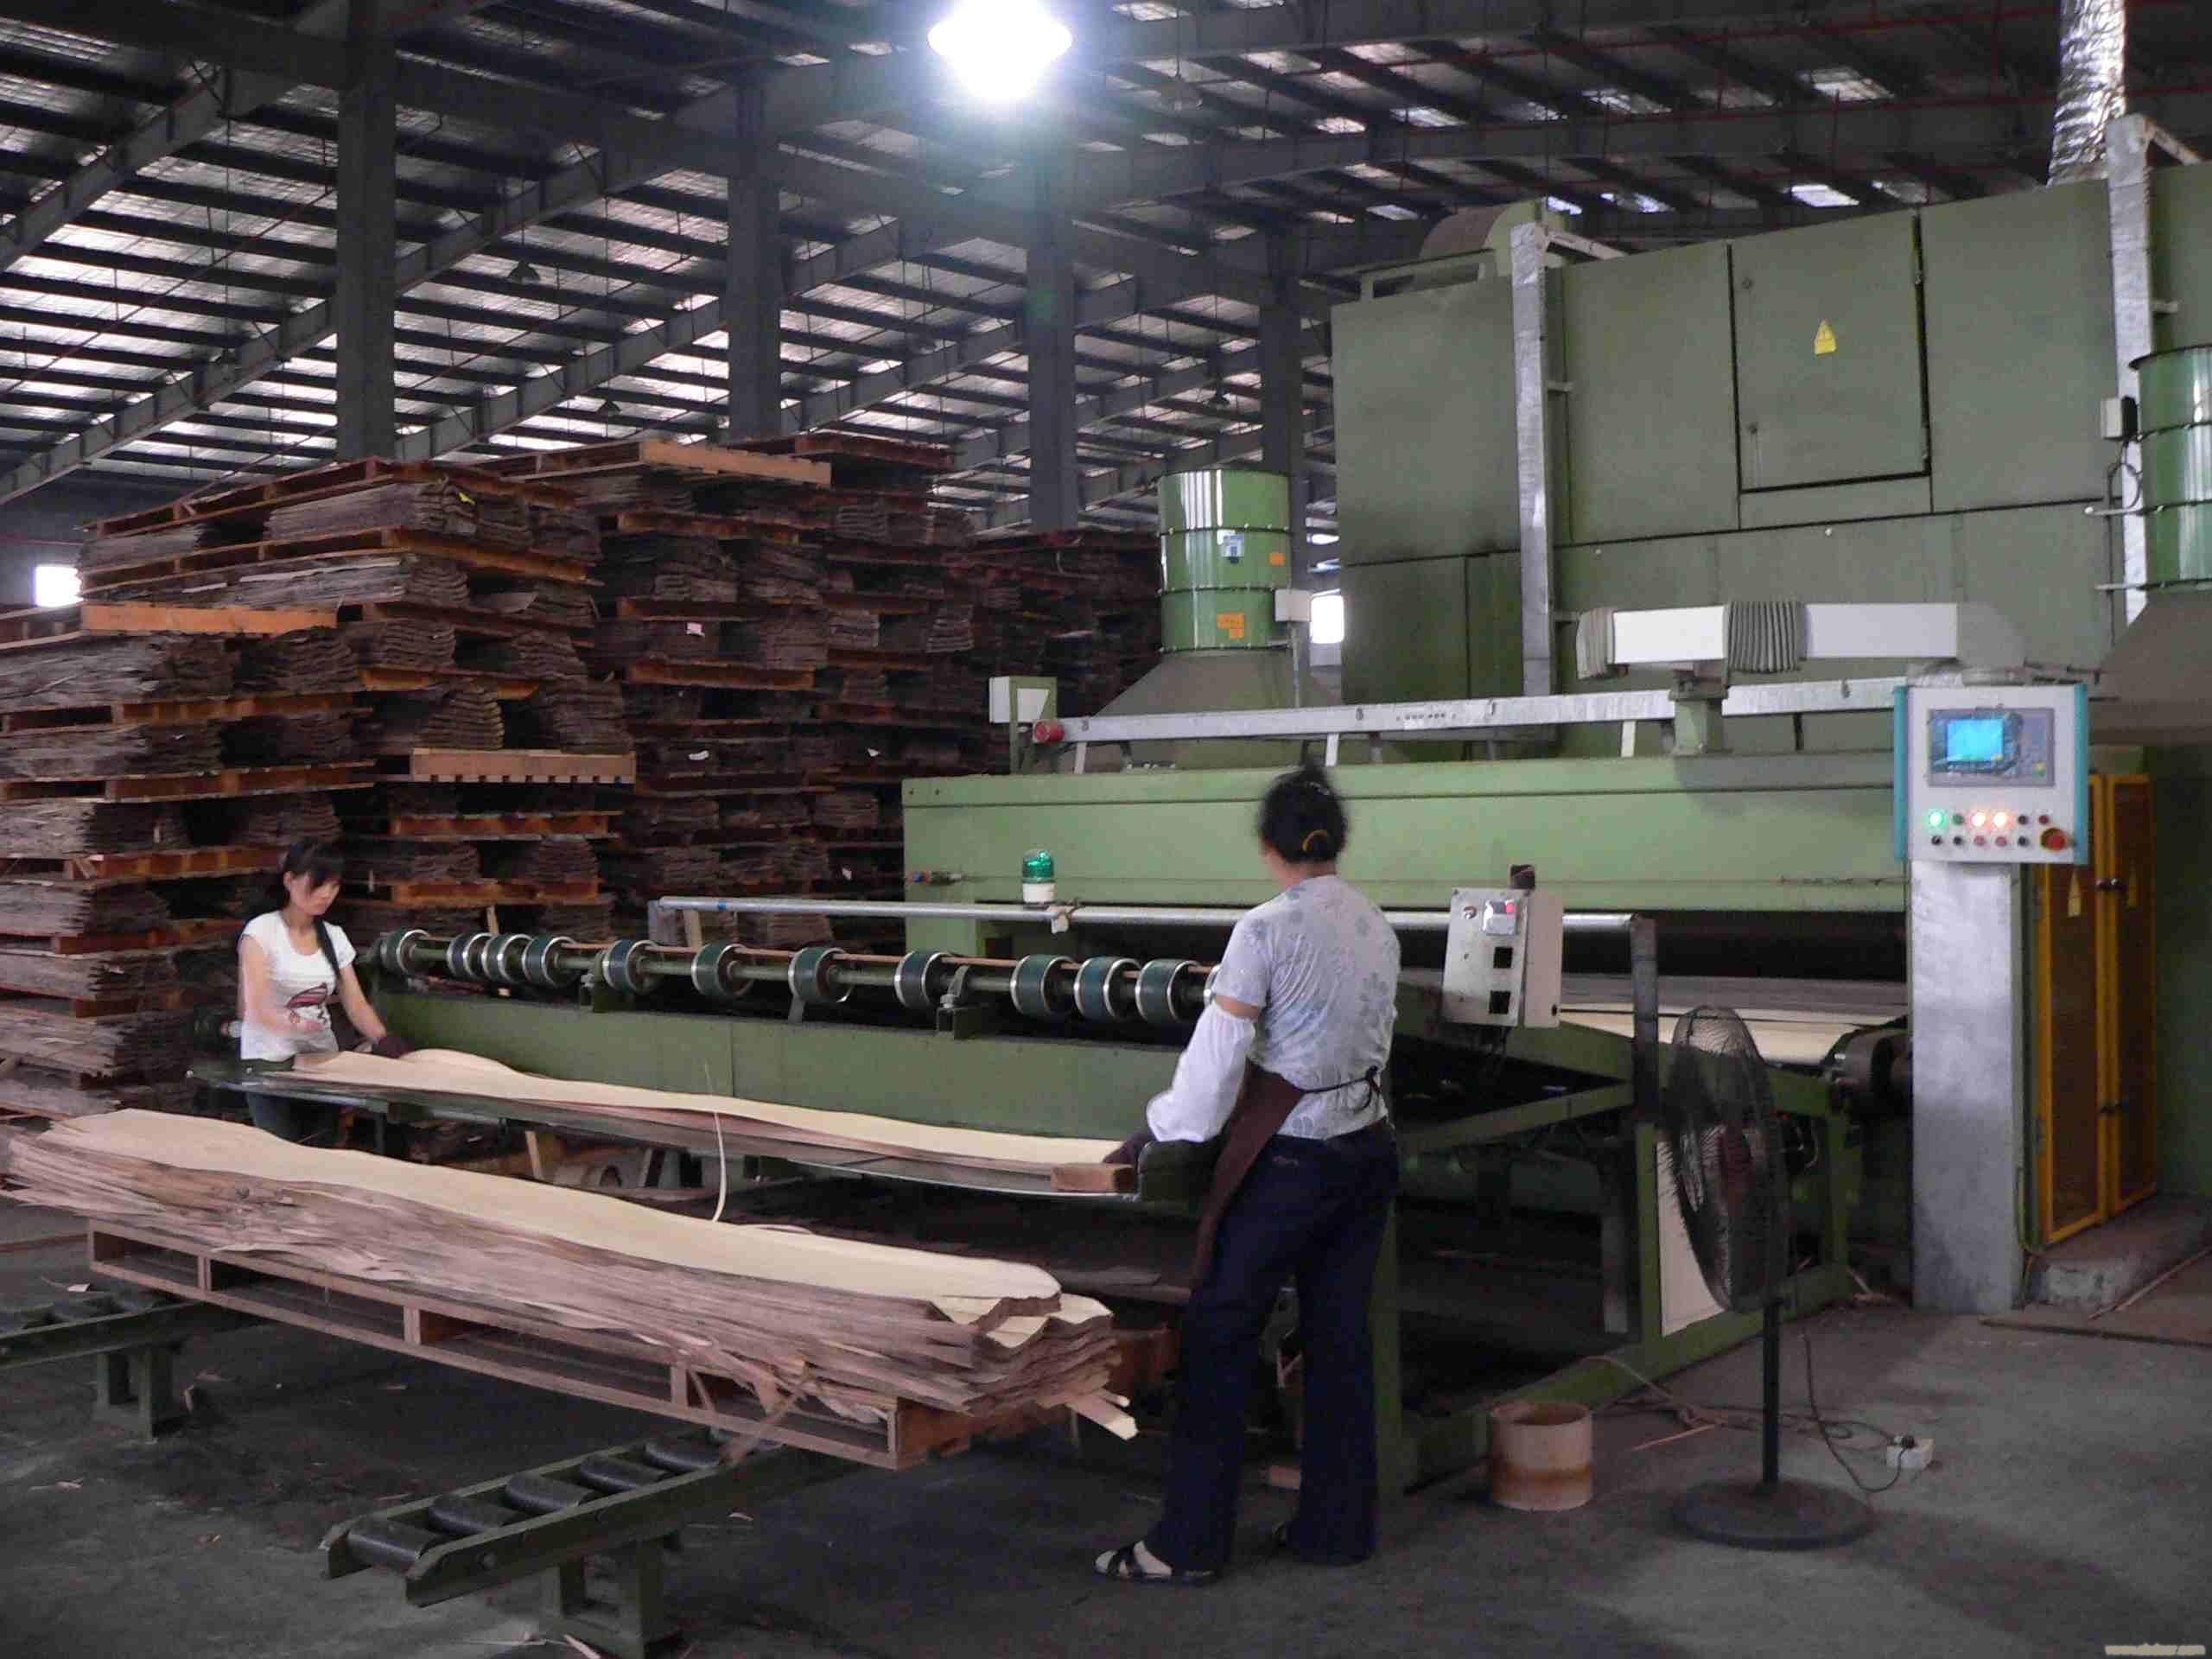 上海知名木业厂家,上海木业厂,上海木皮厂,上海木皮市场,上海原木,上海板材,上海木材市场,上海木门,上海木头